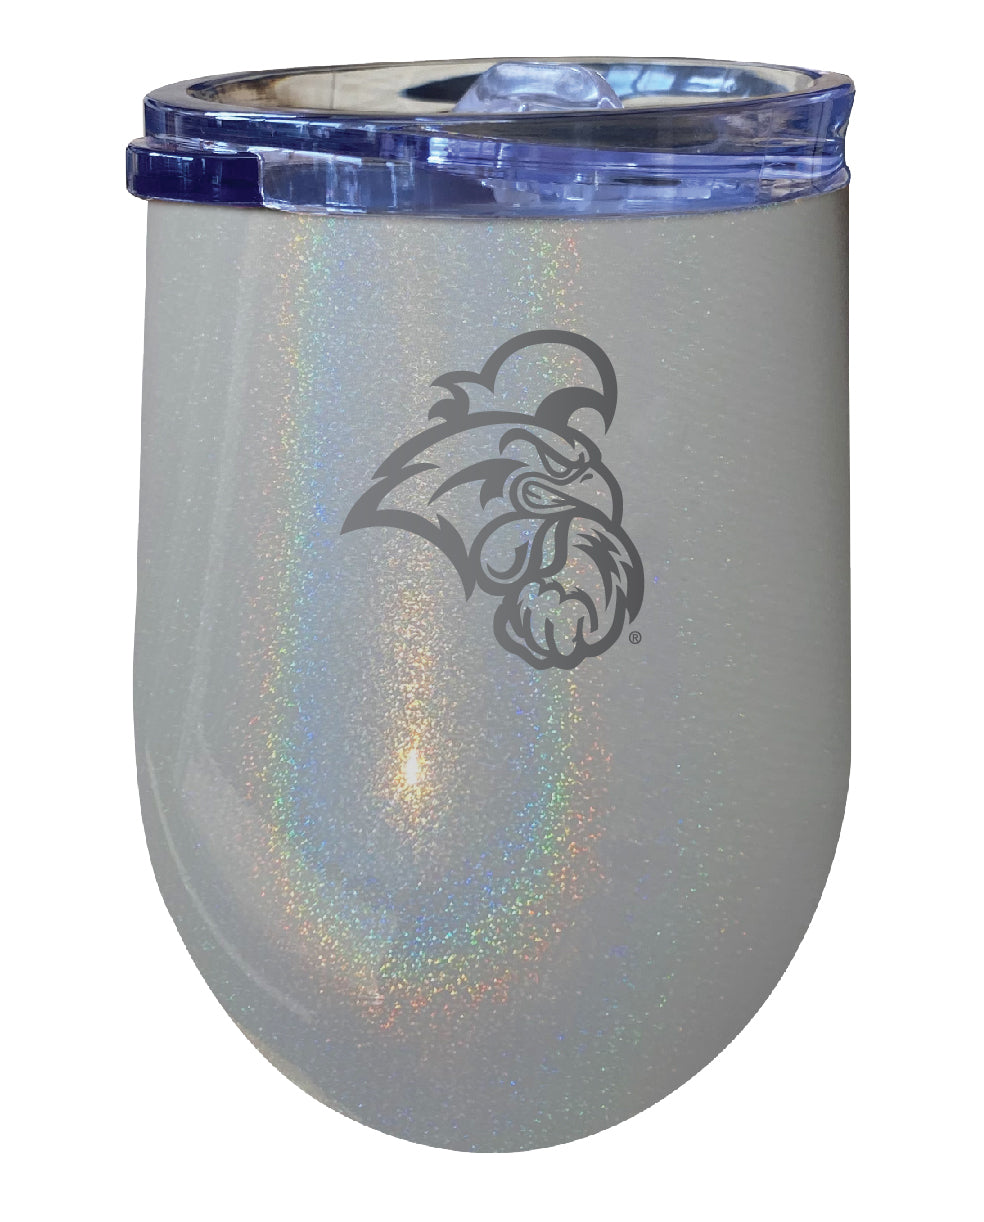 Coastal Carolina University 12 oz Laser Etched Insulated Wine Stainless Steel Tumbler Rainbow Glitter Grey